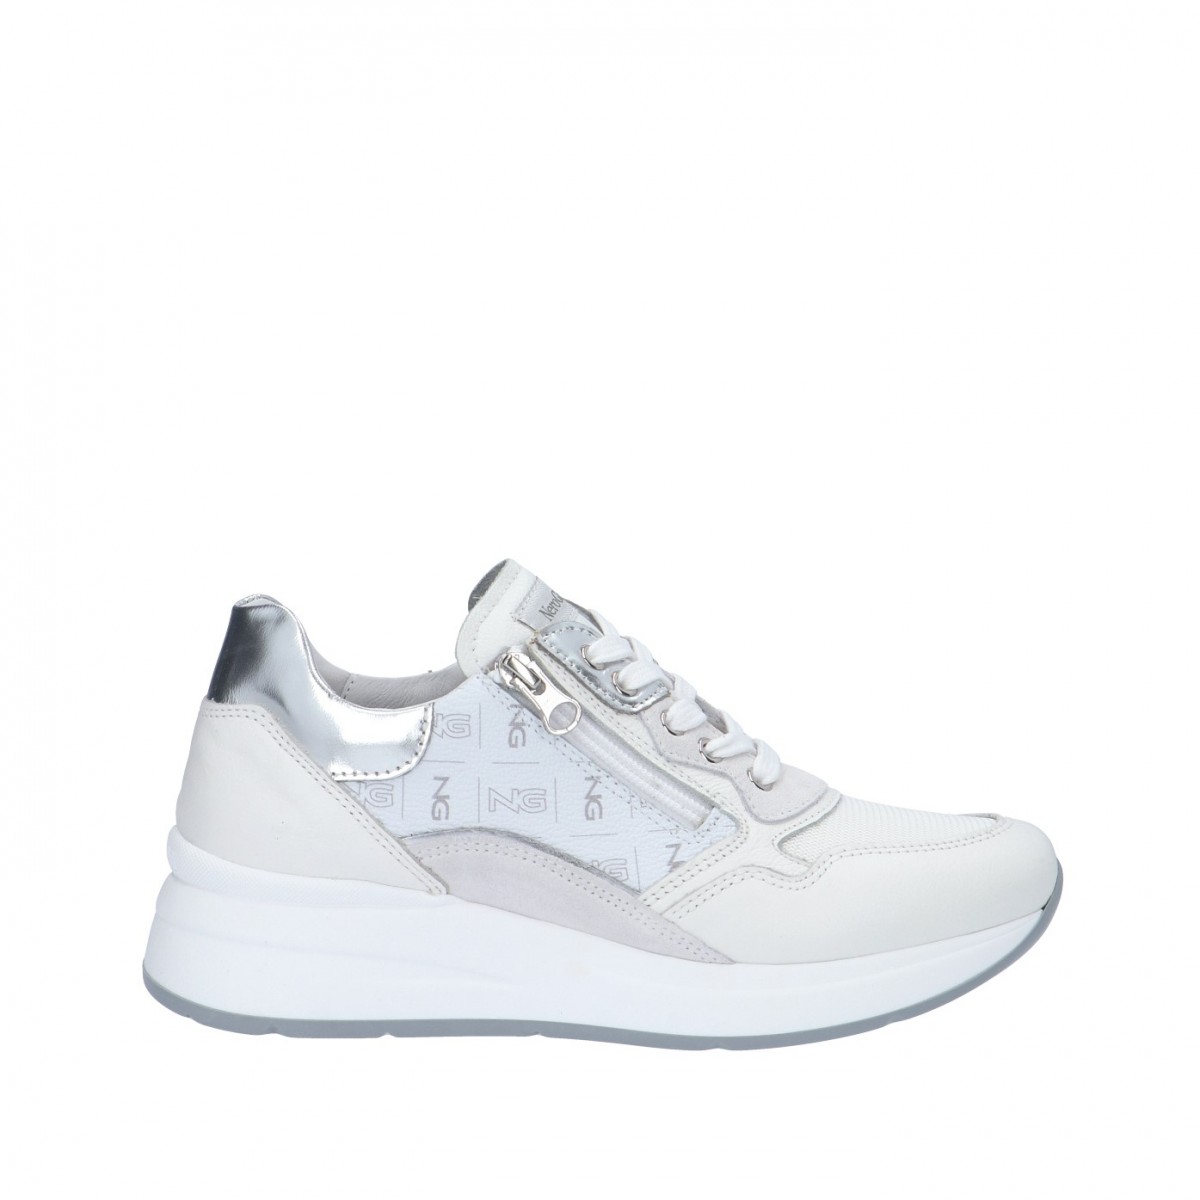 Nerogiardini Sneaker Bianco Gomma E306450D